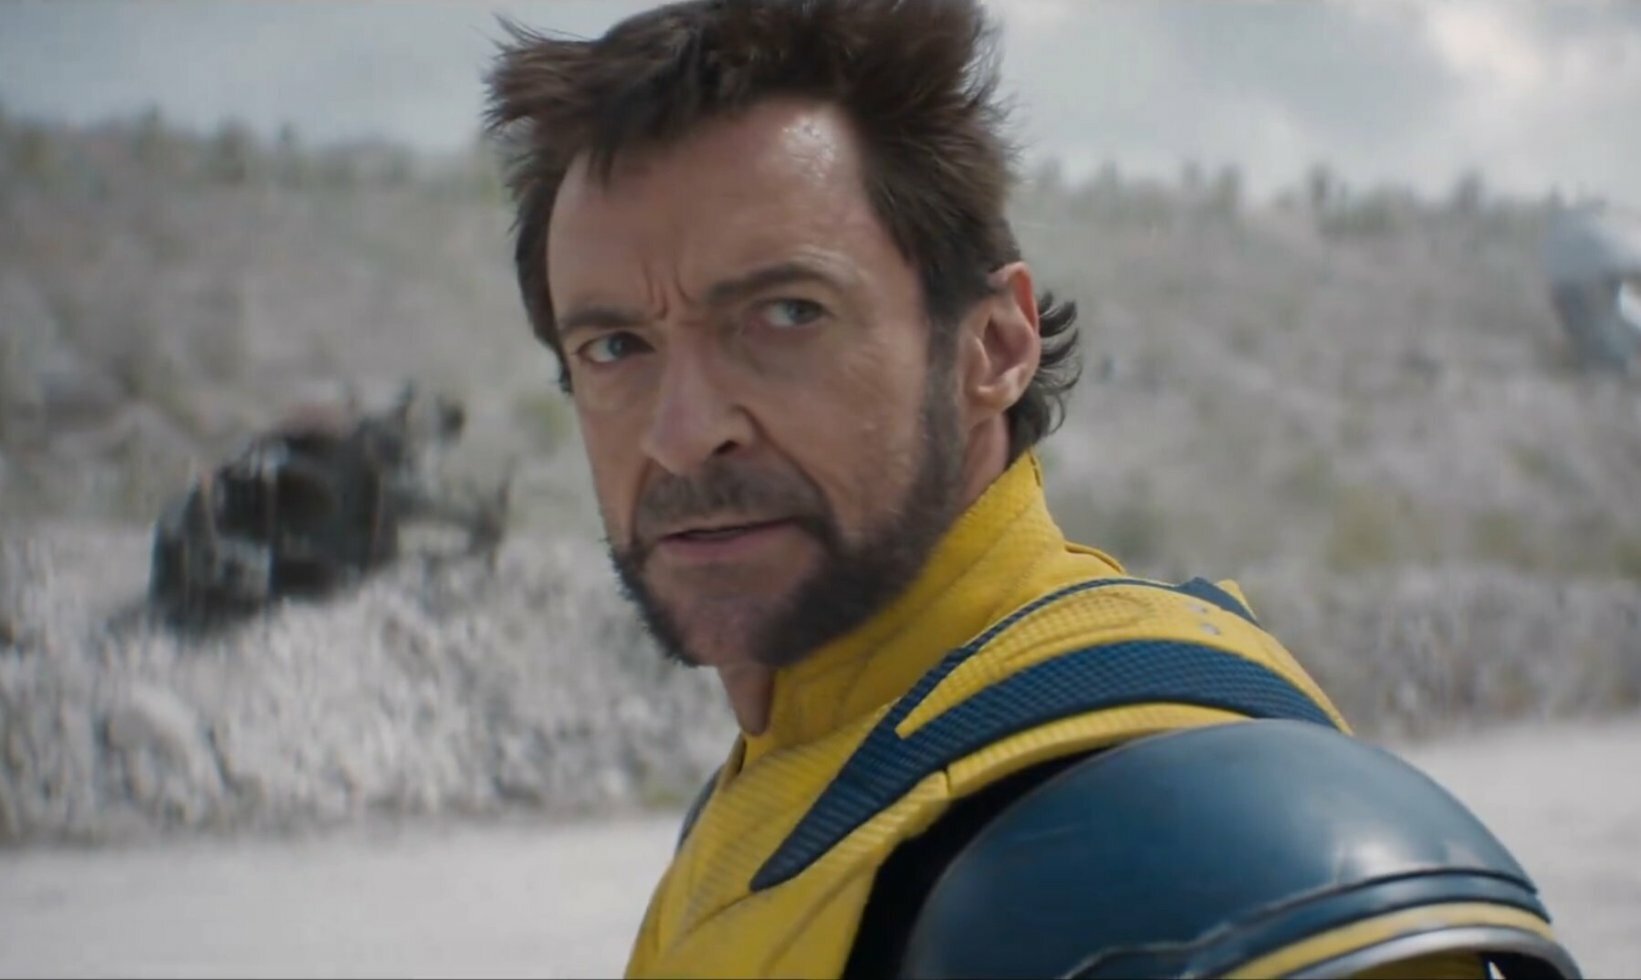 Wolverine er tilbage! Ny Deadpool 3-trailer viser langt om længe Hugh Jackman tilbage i rollen som Wolverine